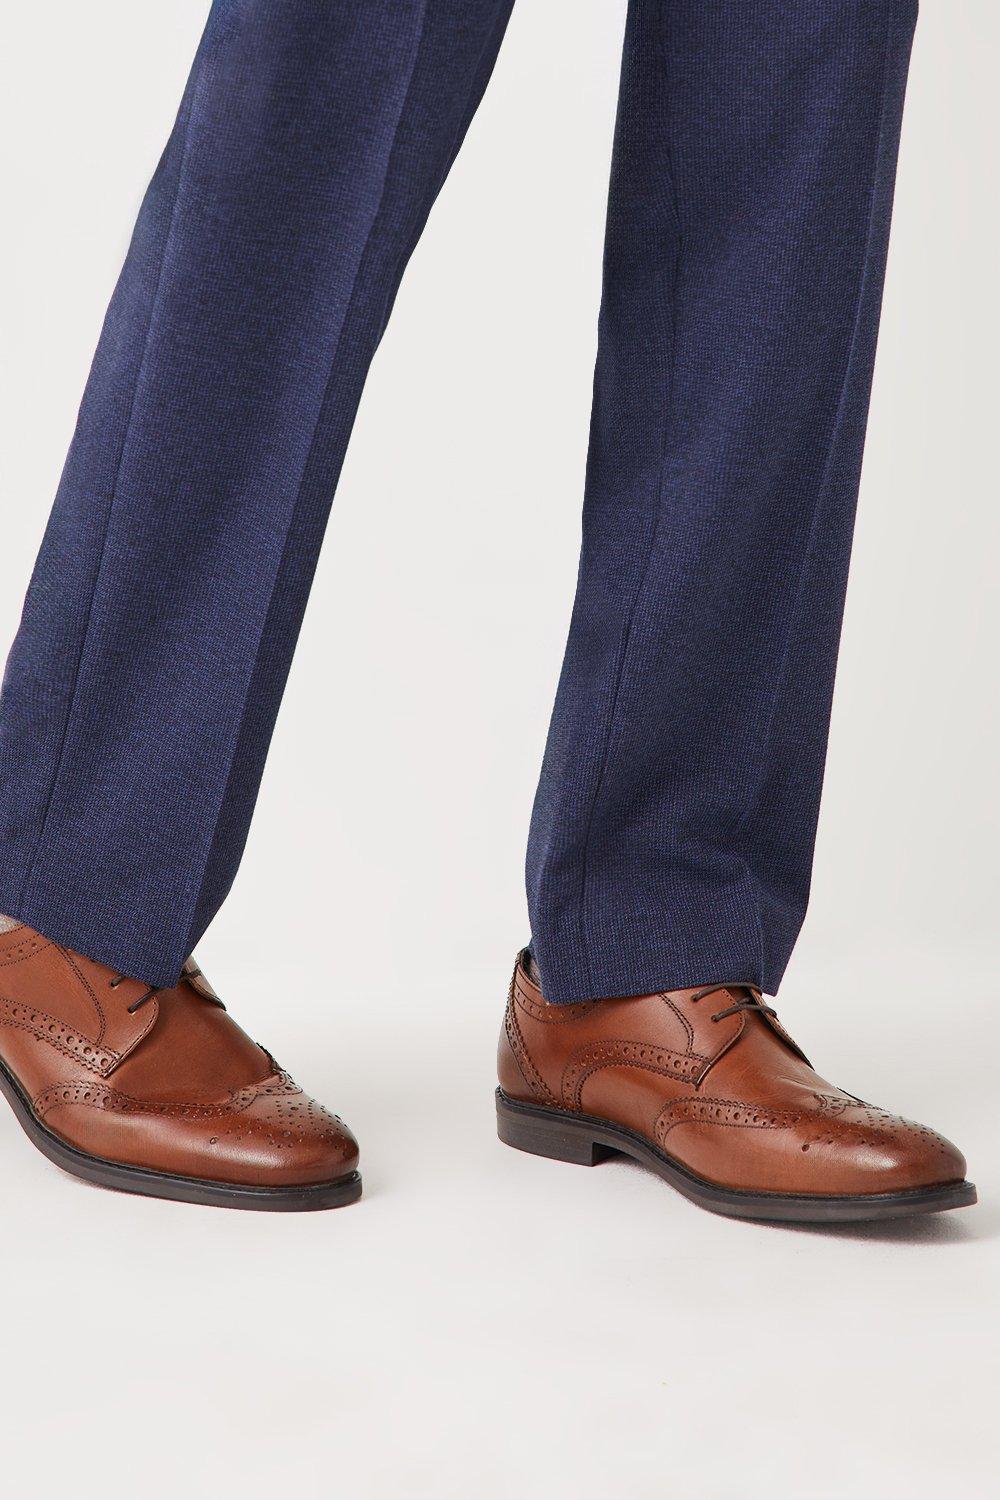 Кожаные броги Glenn Wingtip на шнуровке Debenhams, коричневый кожаные туфли airsoft comfort на шнуровке debenhams коричневый